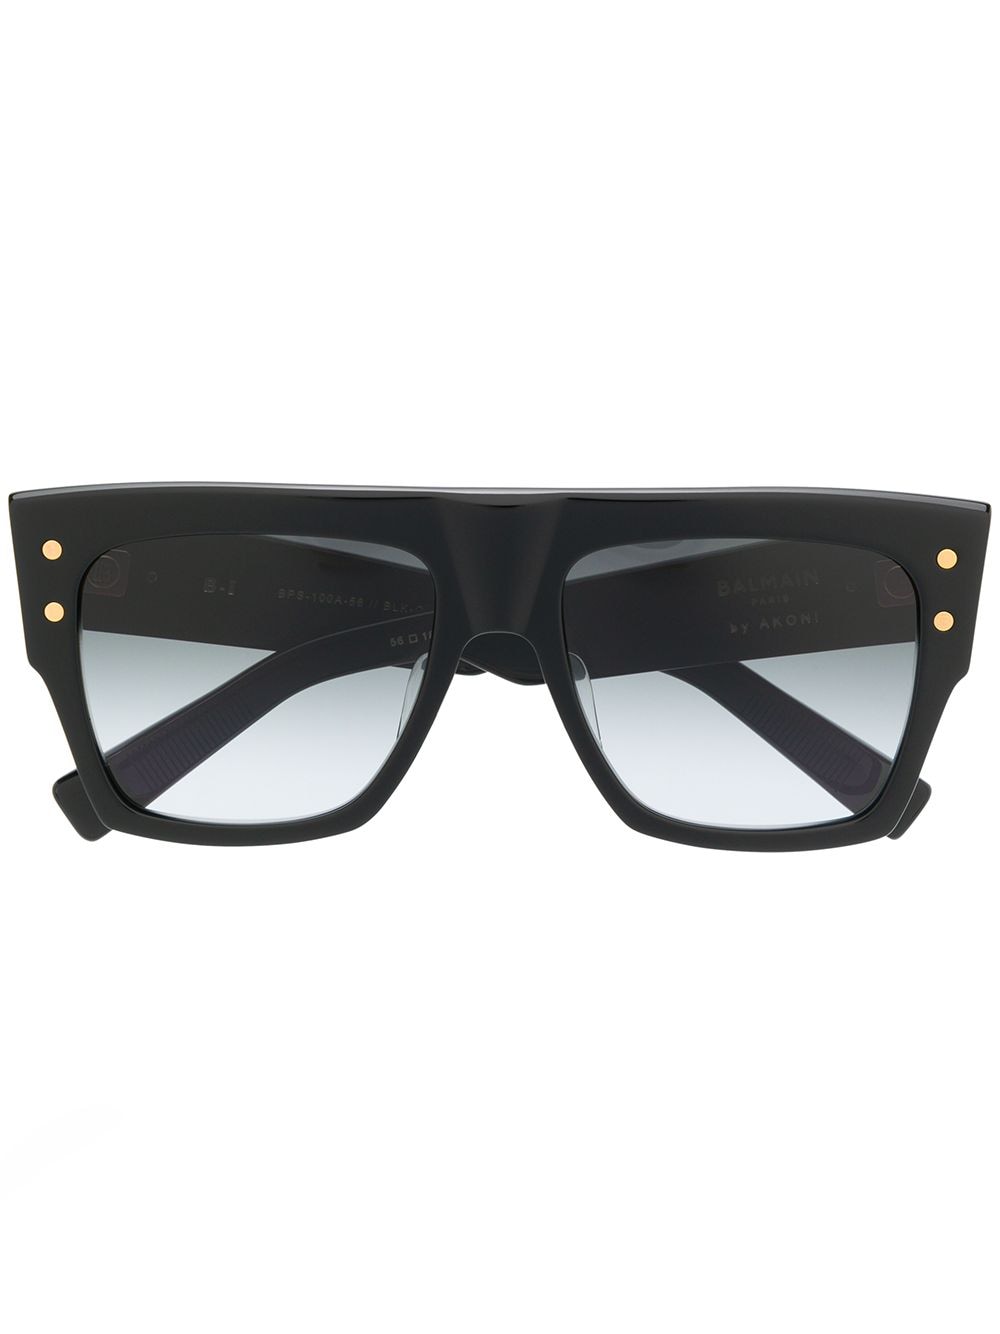 Balmain Eyewear x Akoni gradient tinted sunglasses - Black von Balmain Eyewear